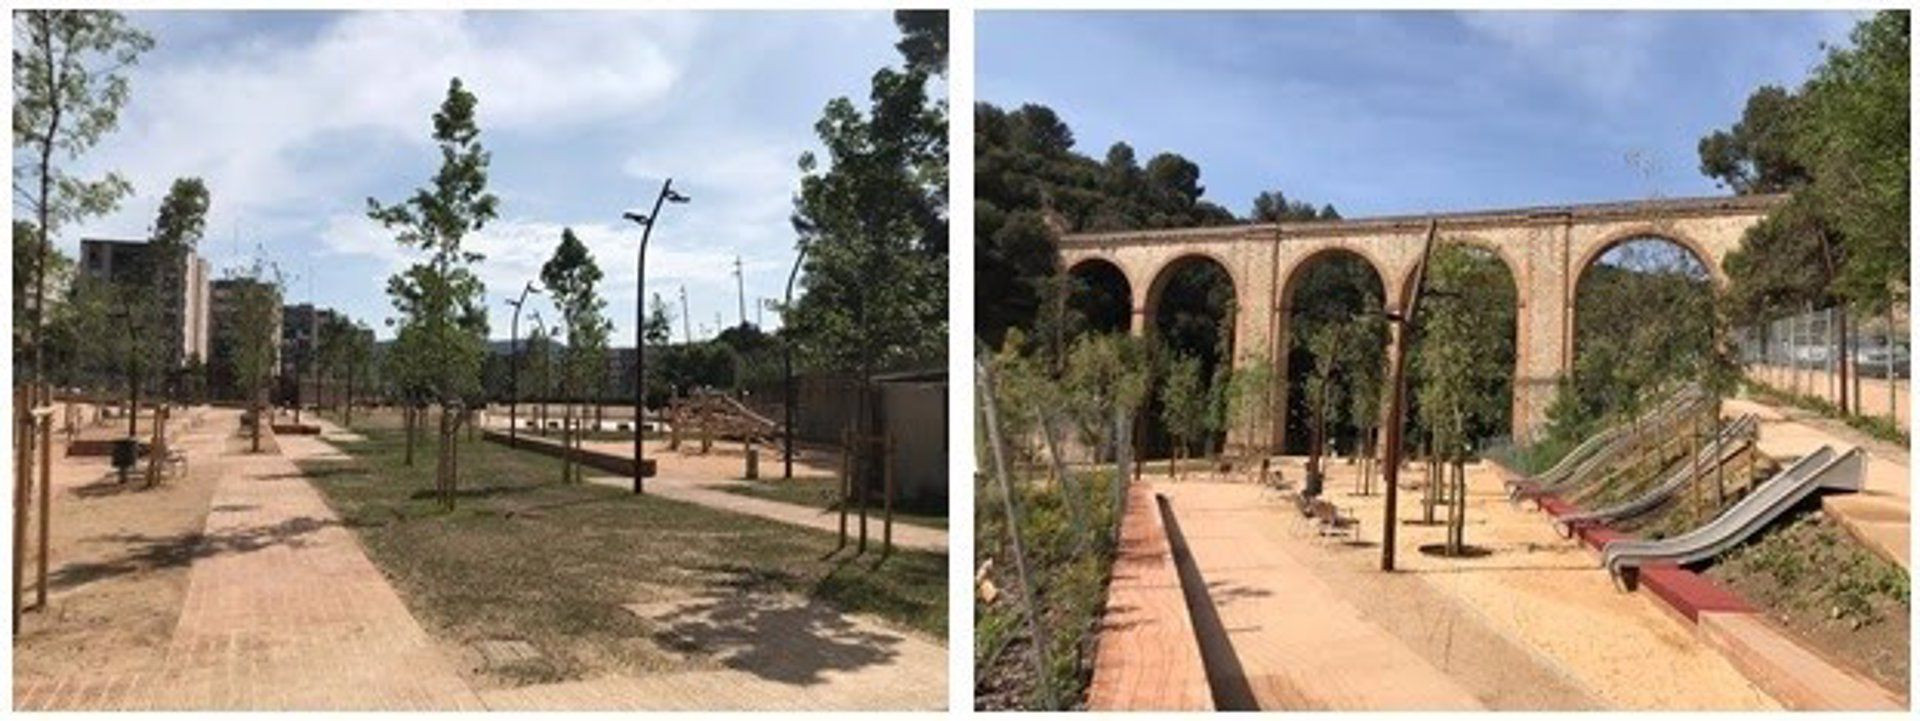 Parc de l'Aqüeducte en el barrio de Ciutat Meridiana / AYUNTAMIENTO DE BARCELONA